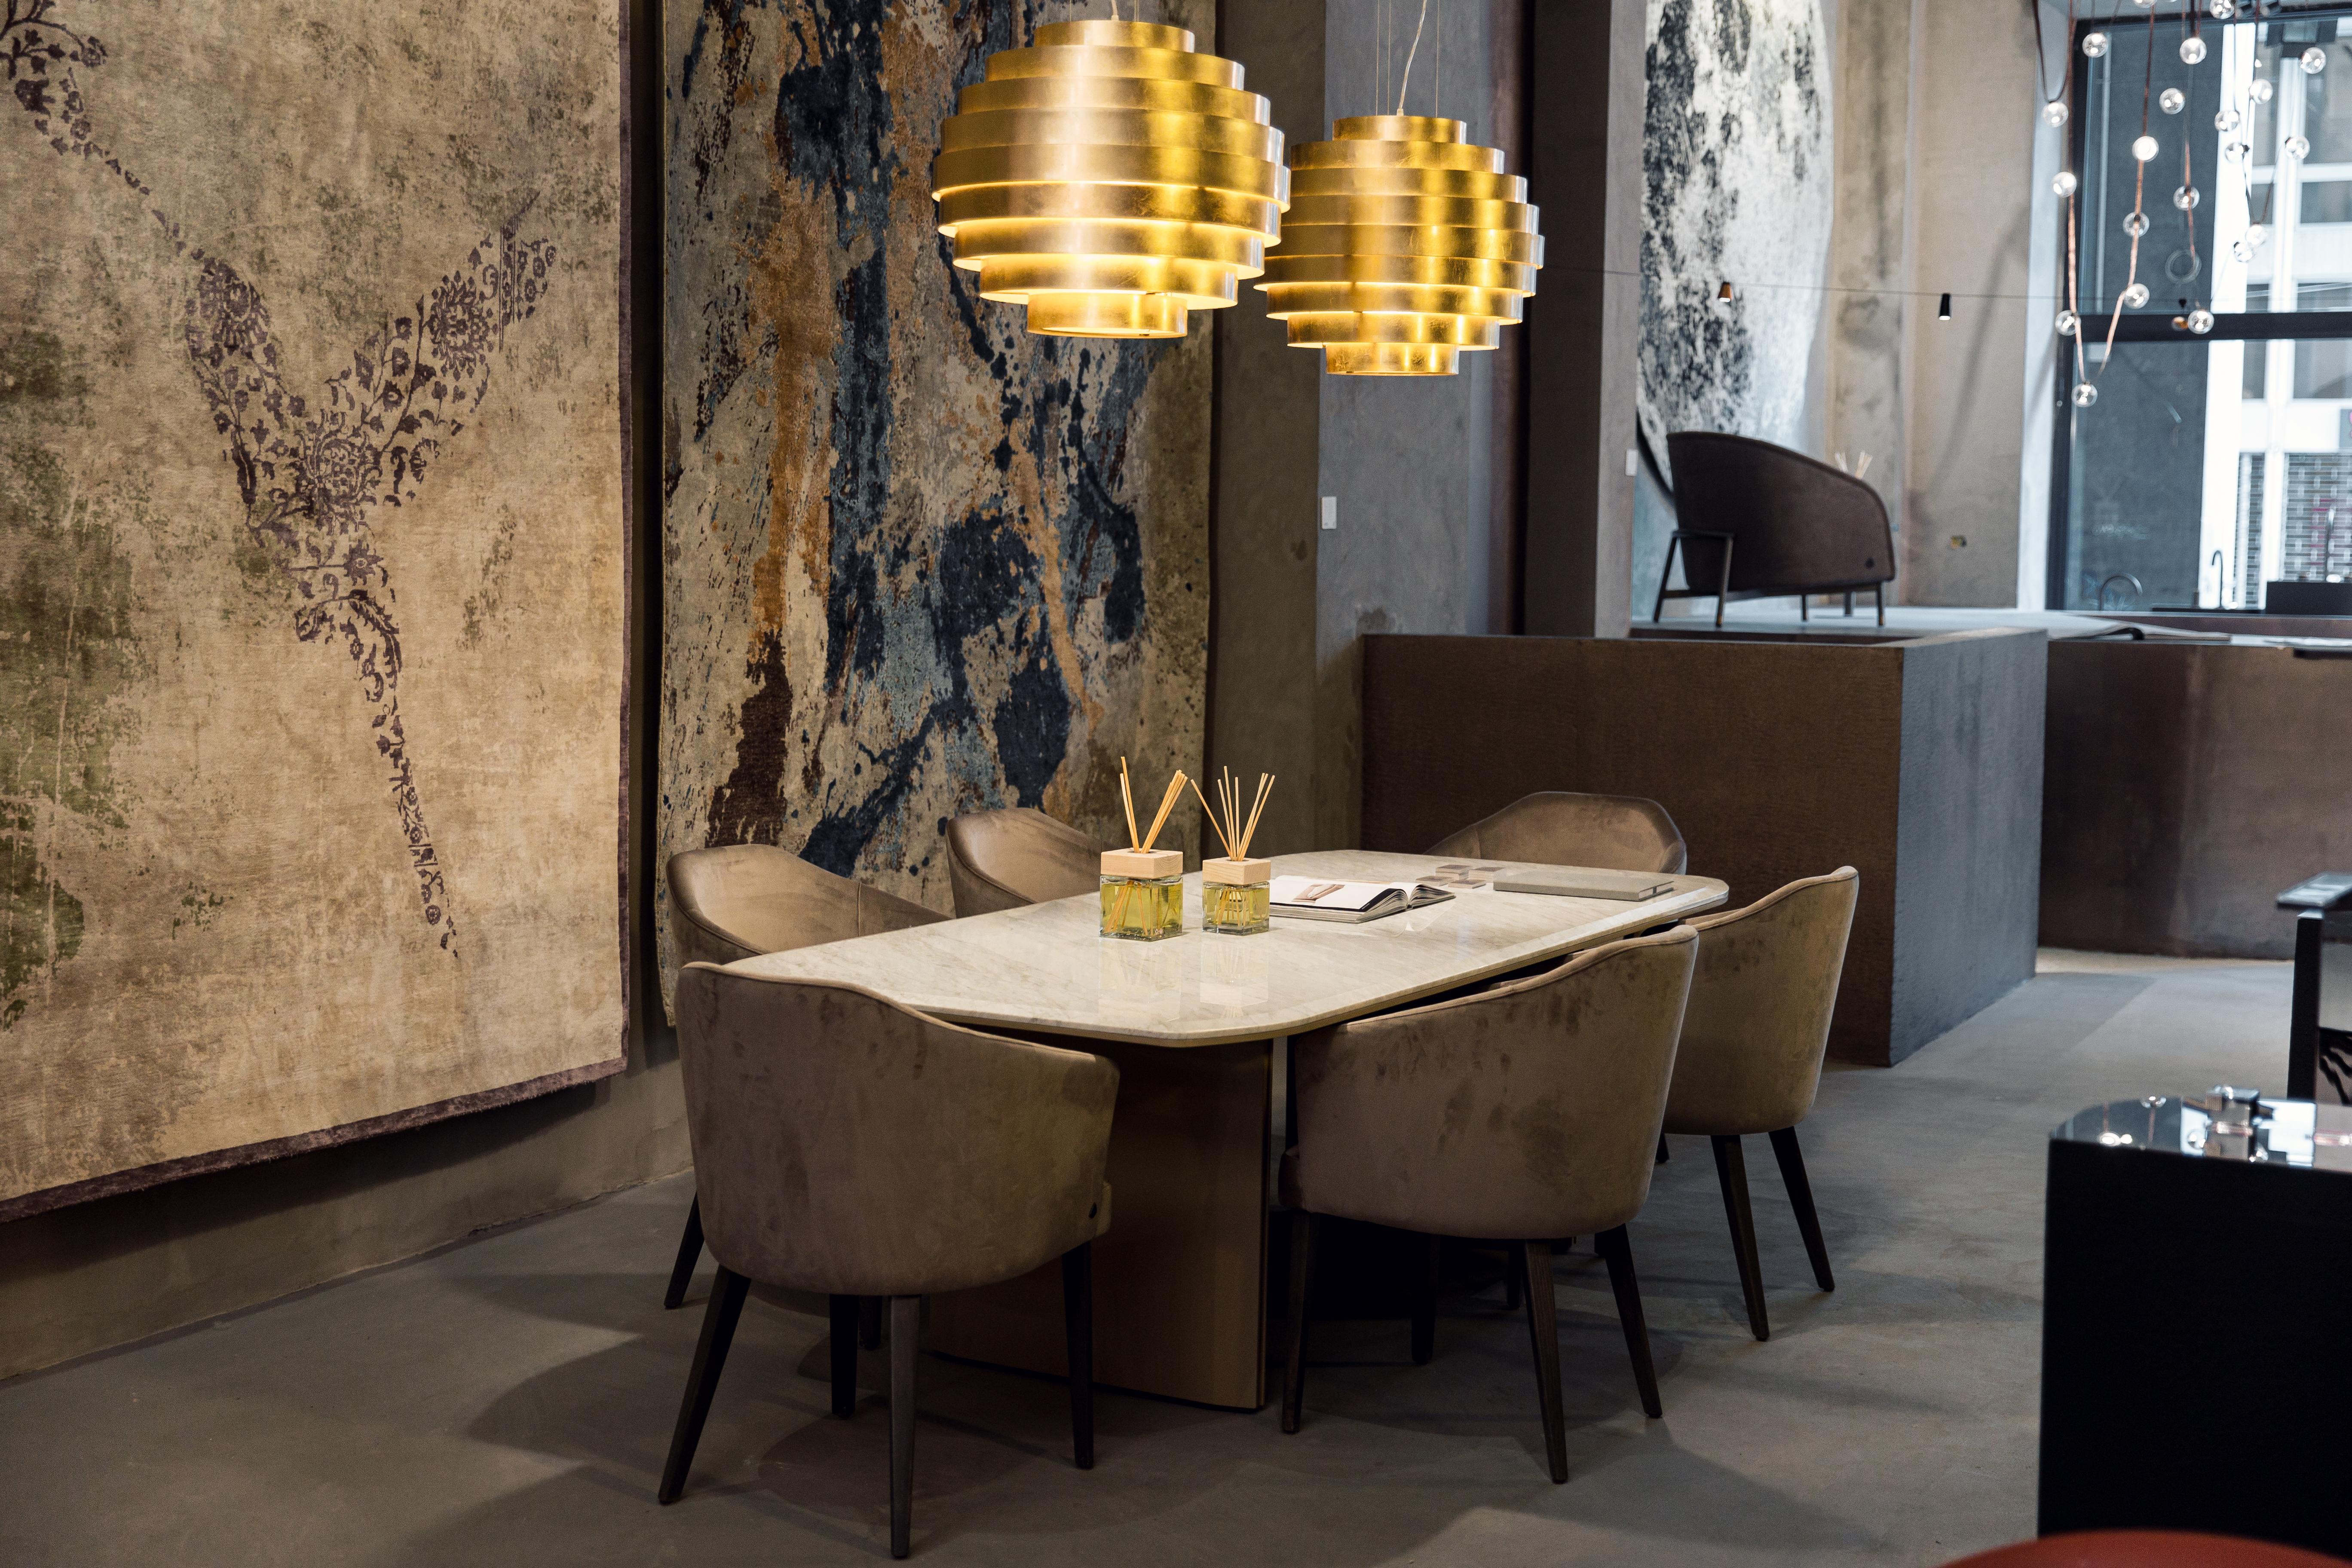 Avalon, table de salle à manger de la collection Diamond, disponible avec plateau en marbre de Carrare chanfreiné, pieds en bois laqué avec inserts métalliques finition titane.